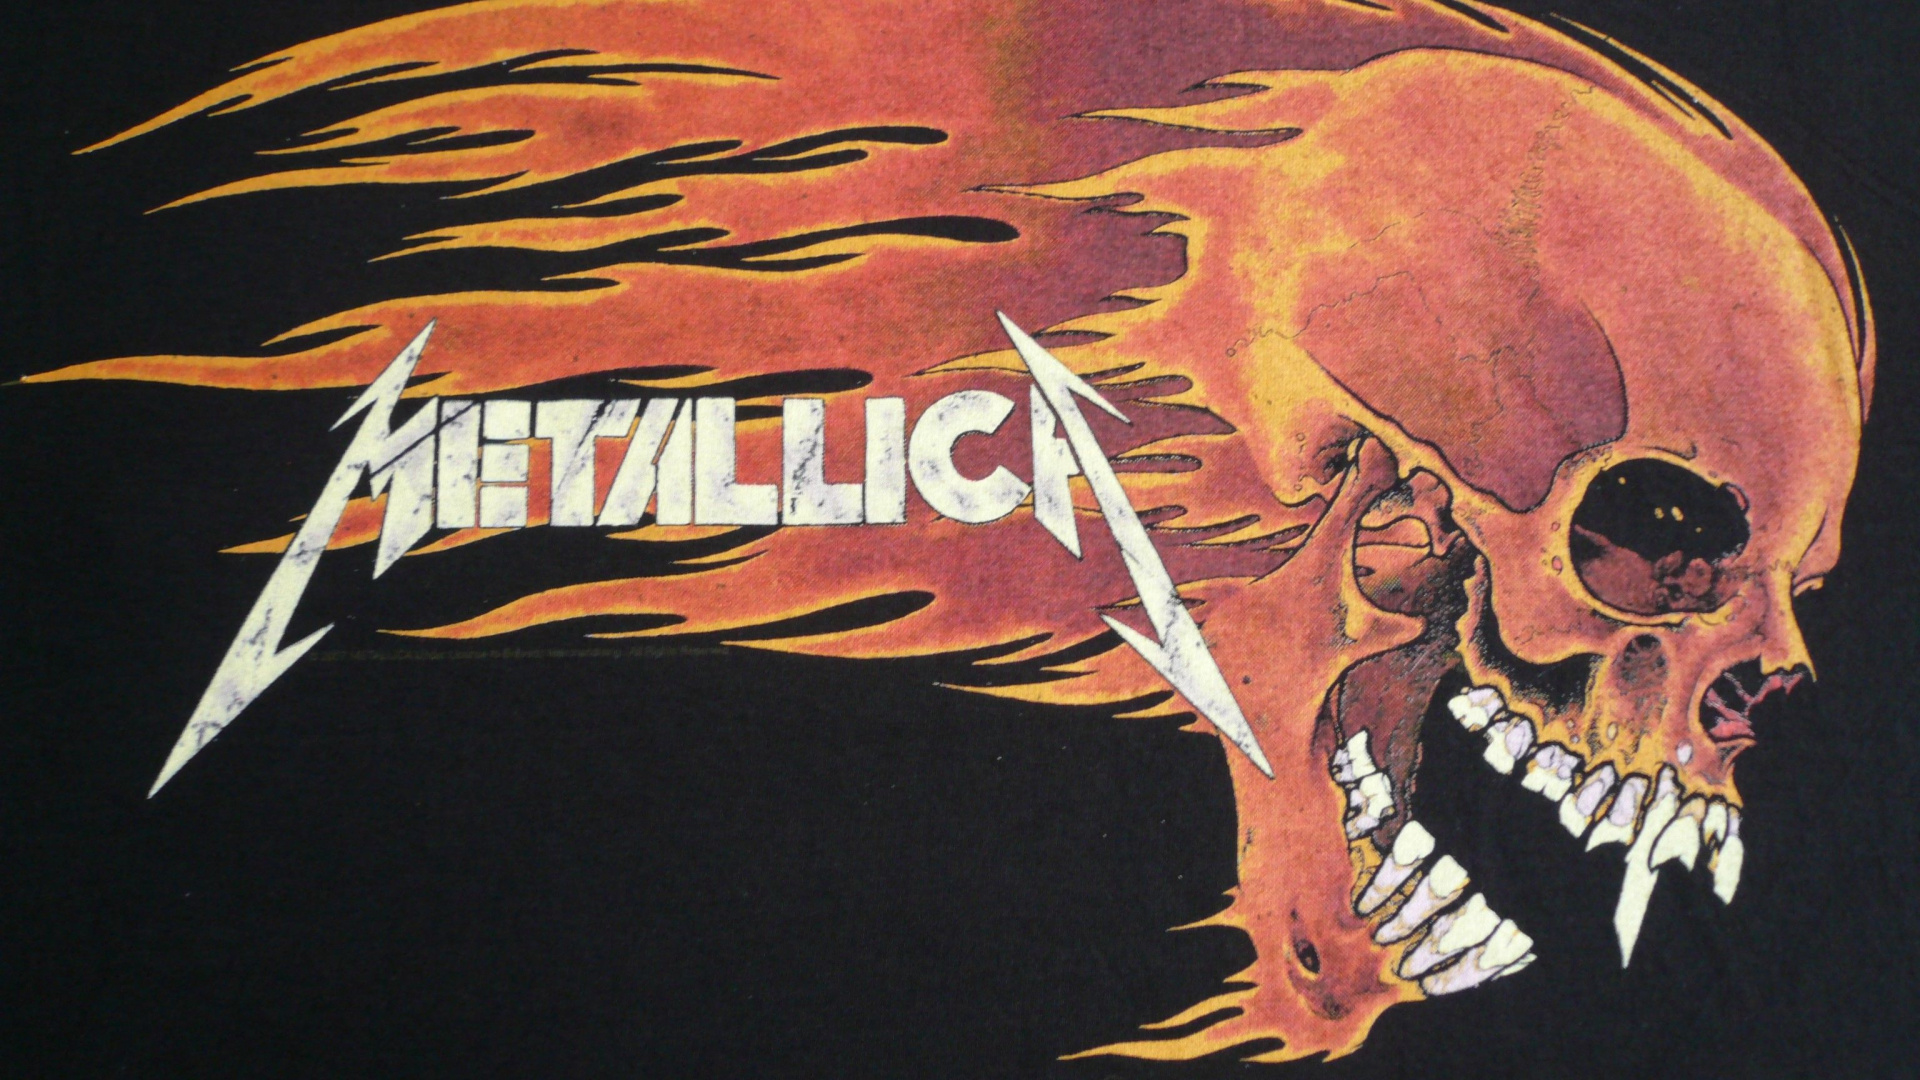 Metallica, 重金属, 头骨, 骨, 套 壁纸 1920x1080 允许